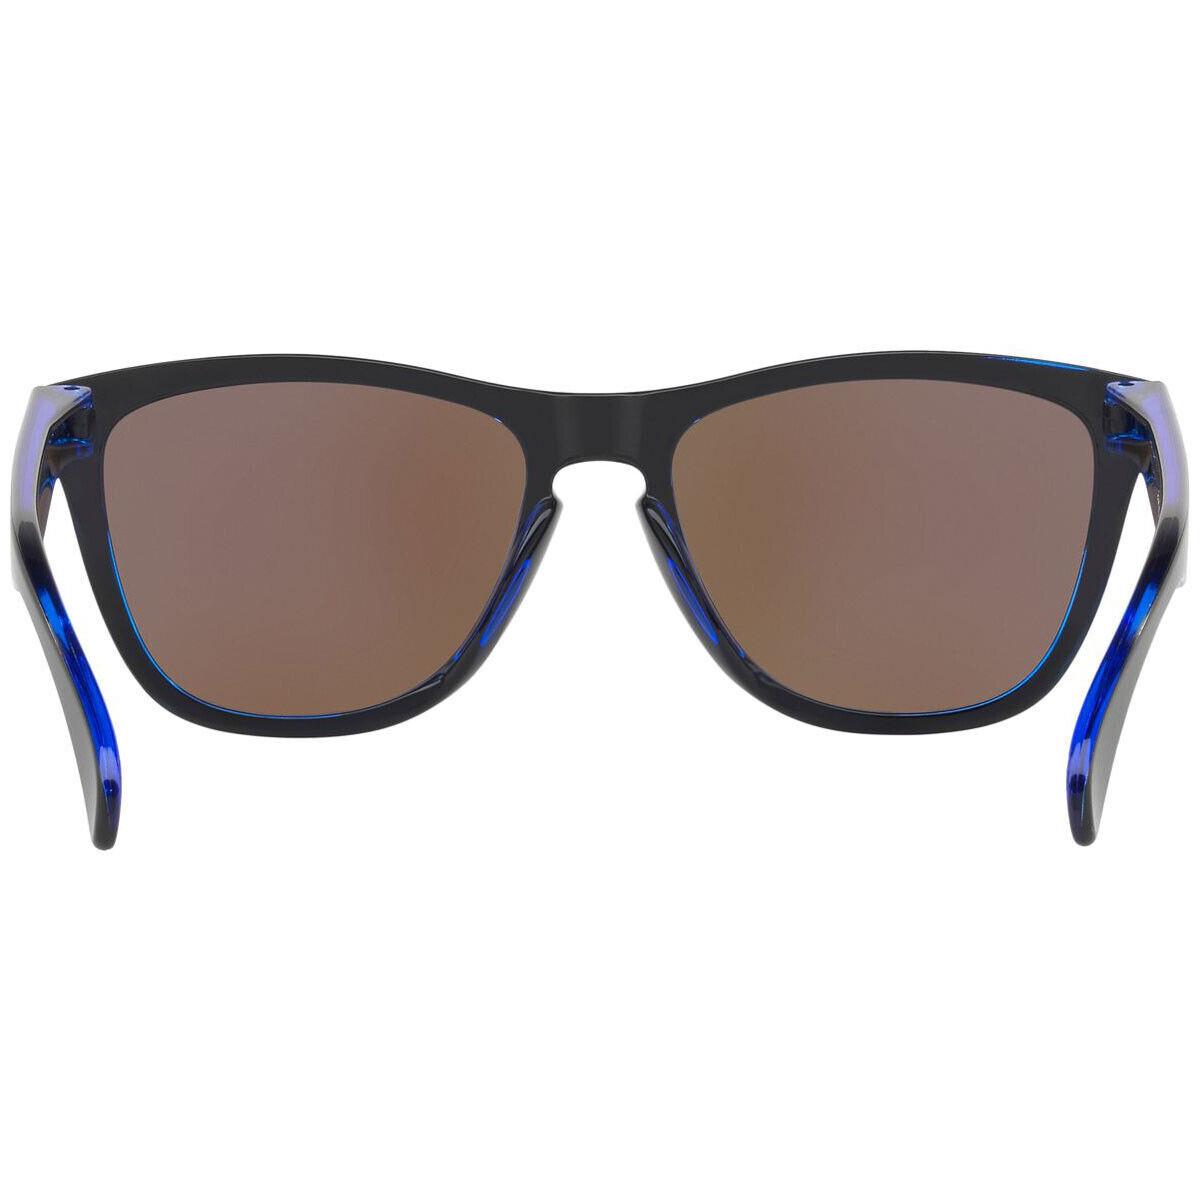 Oakley sunglasses Frogskins - Frame: Blue, Lens: Blue 2